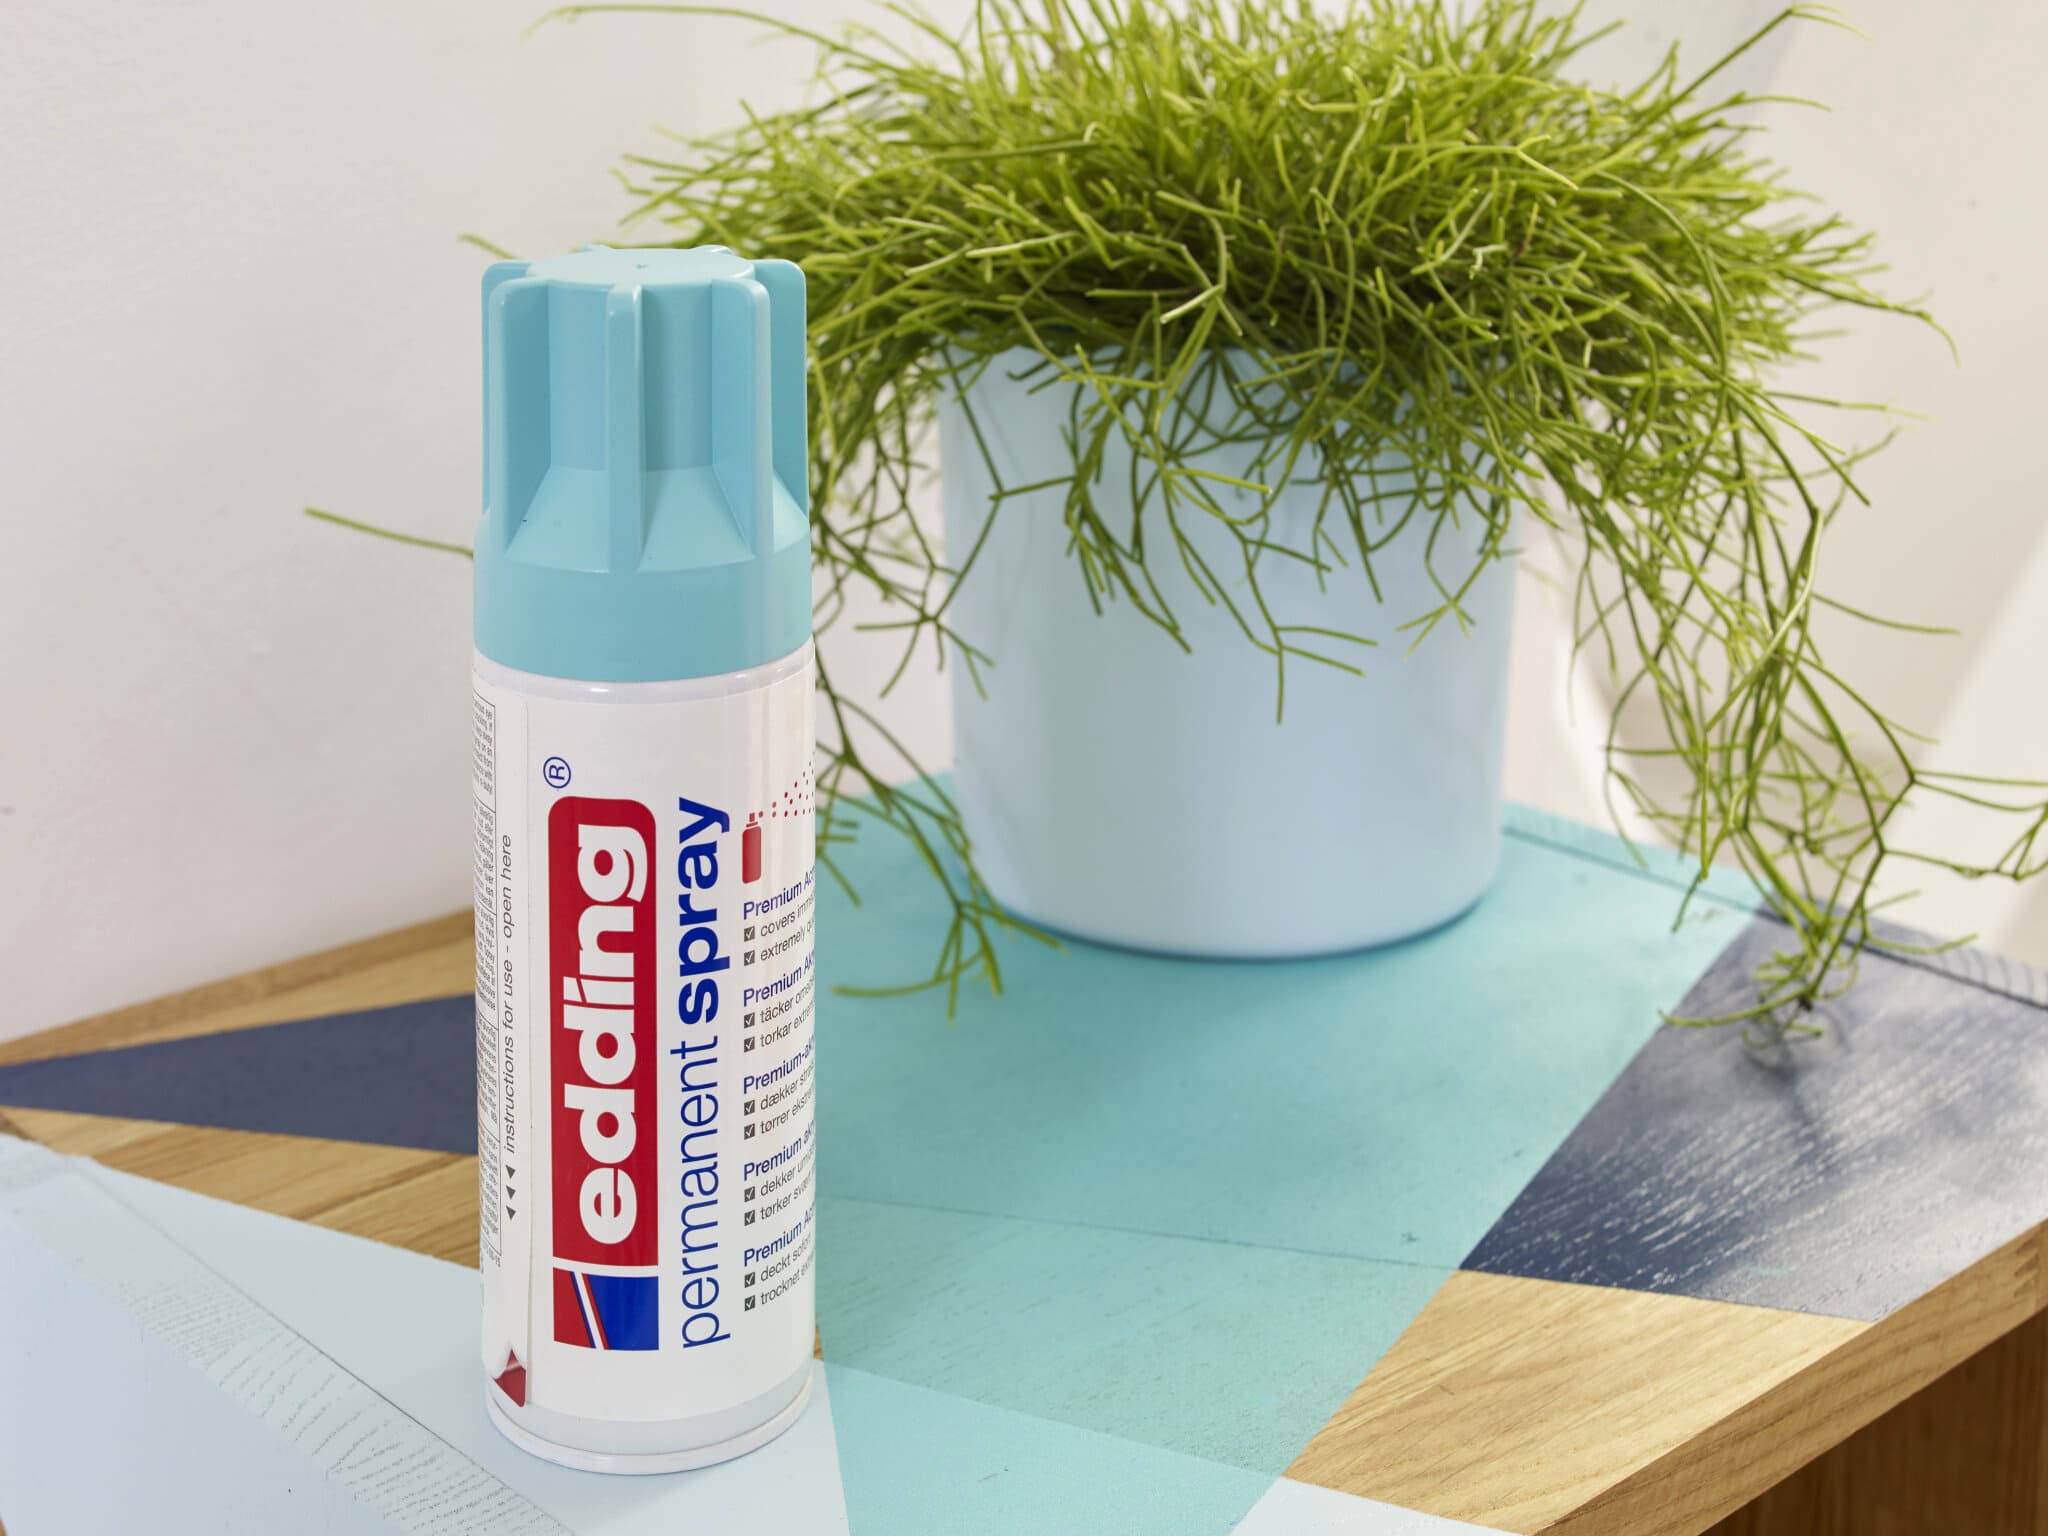 Eine Dose edding 5200 Permanentspray Acryllack Pastell & sanfte Farben steht auf einer mit einer blauen Schutzfolie bedeckten Holzoberfläche neben einer Topfpflanze mit langen, dünnen grünen Blättern.